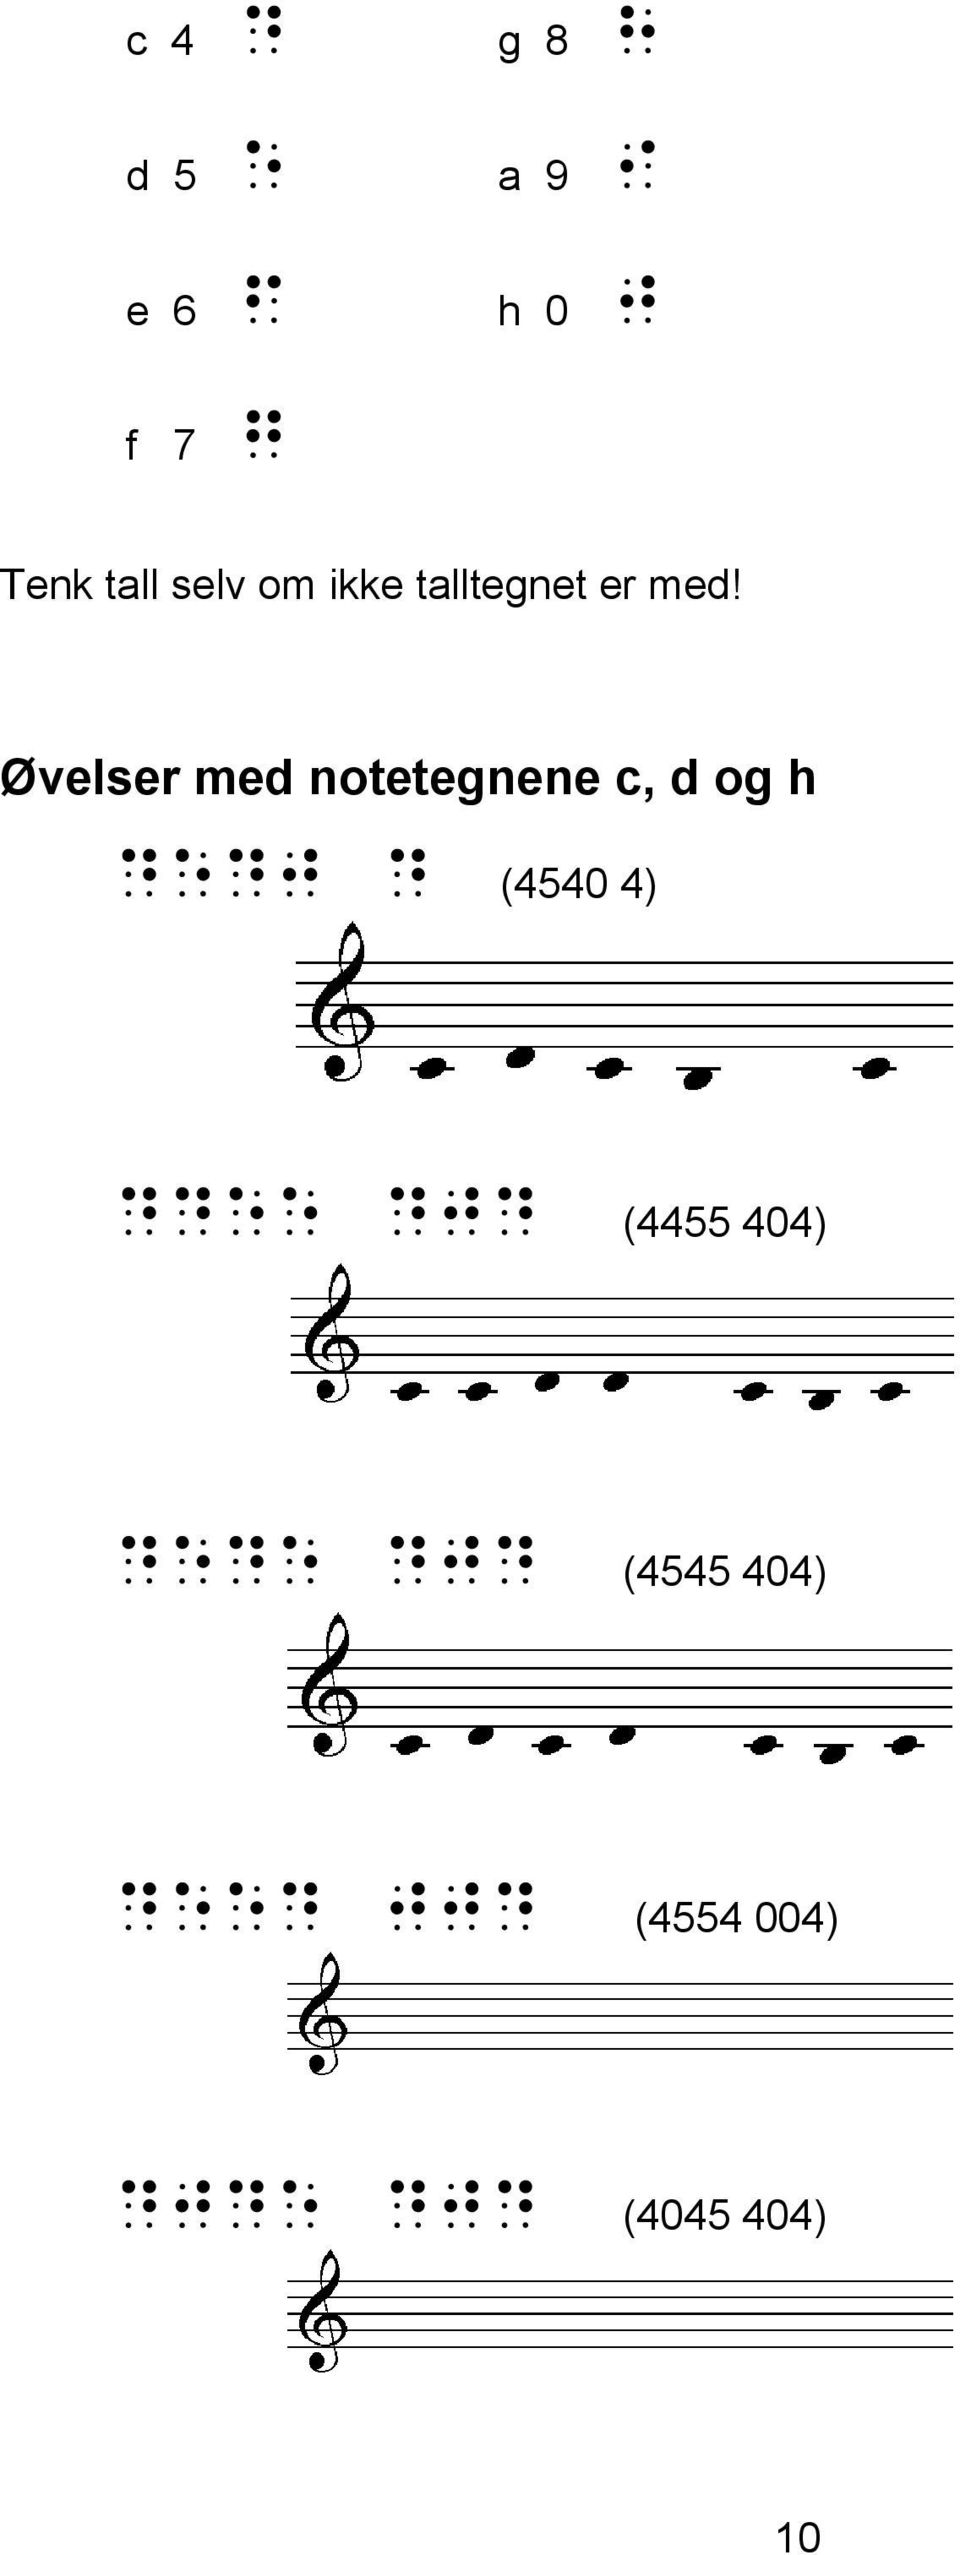 Øvelser med notetegnene c, d og h dedj d (4540 4)